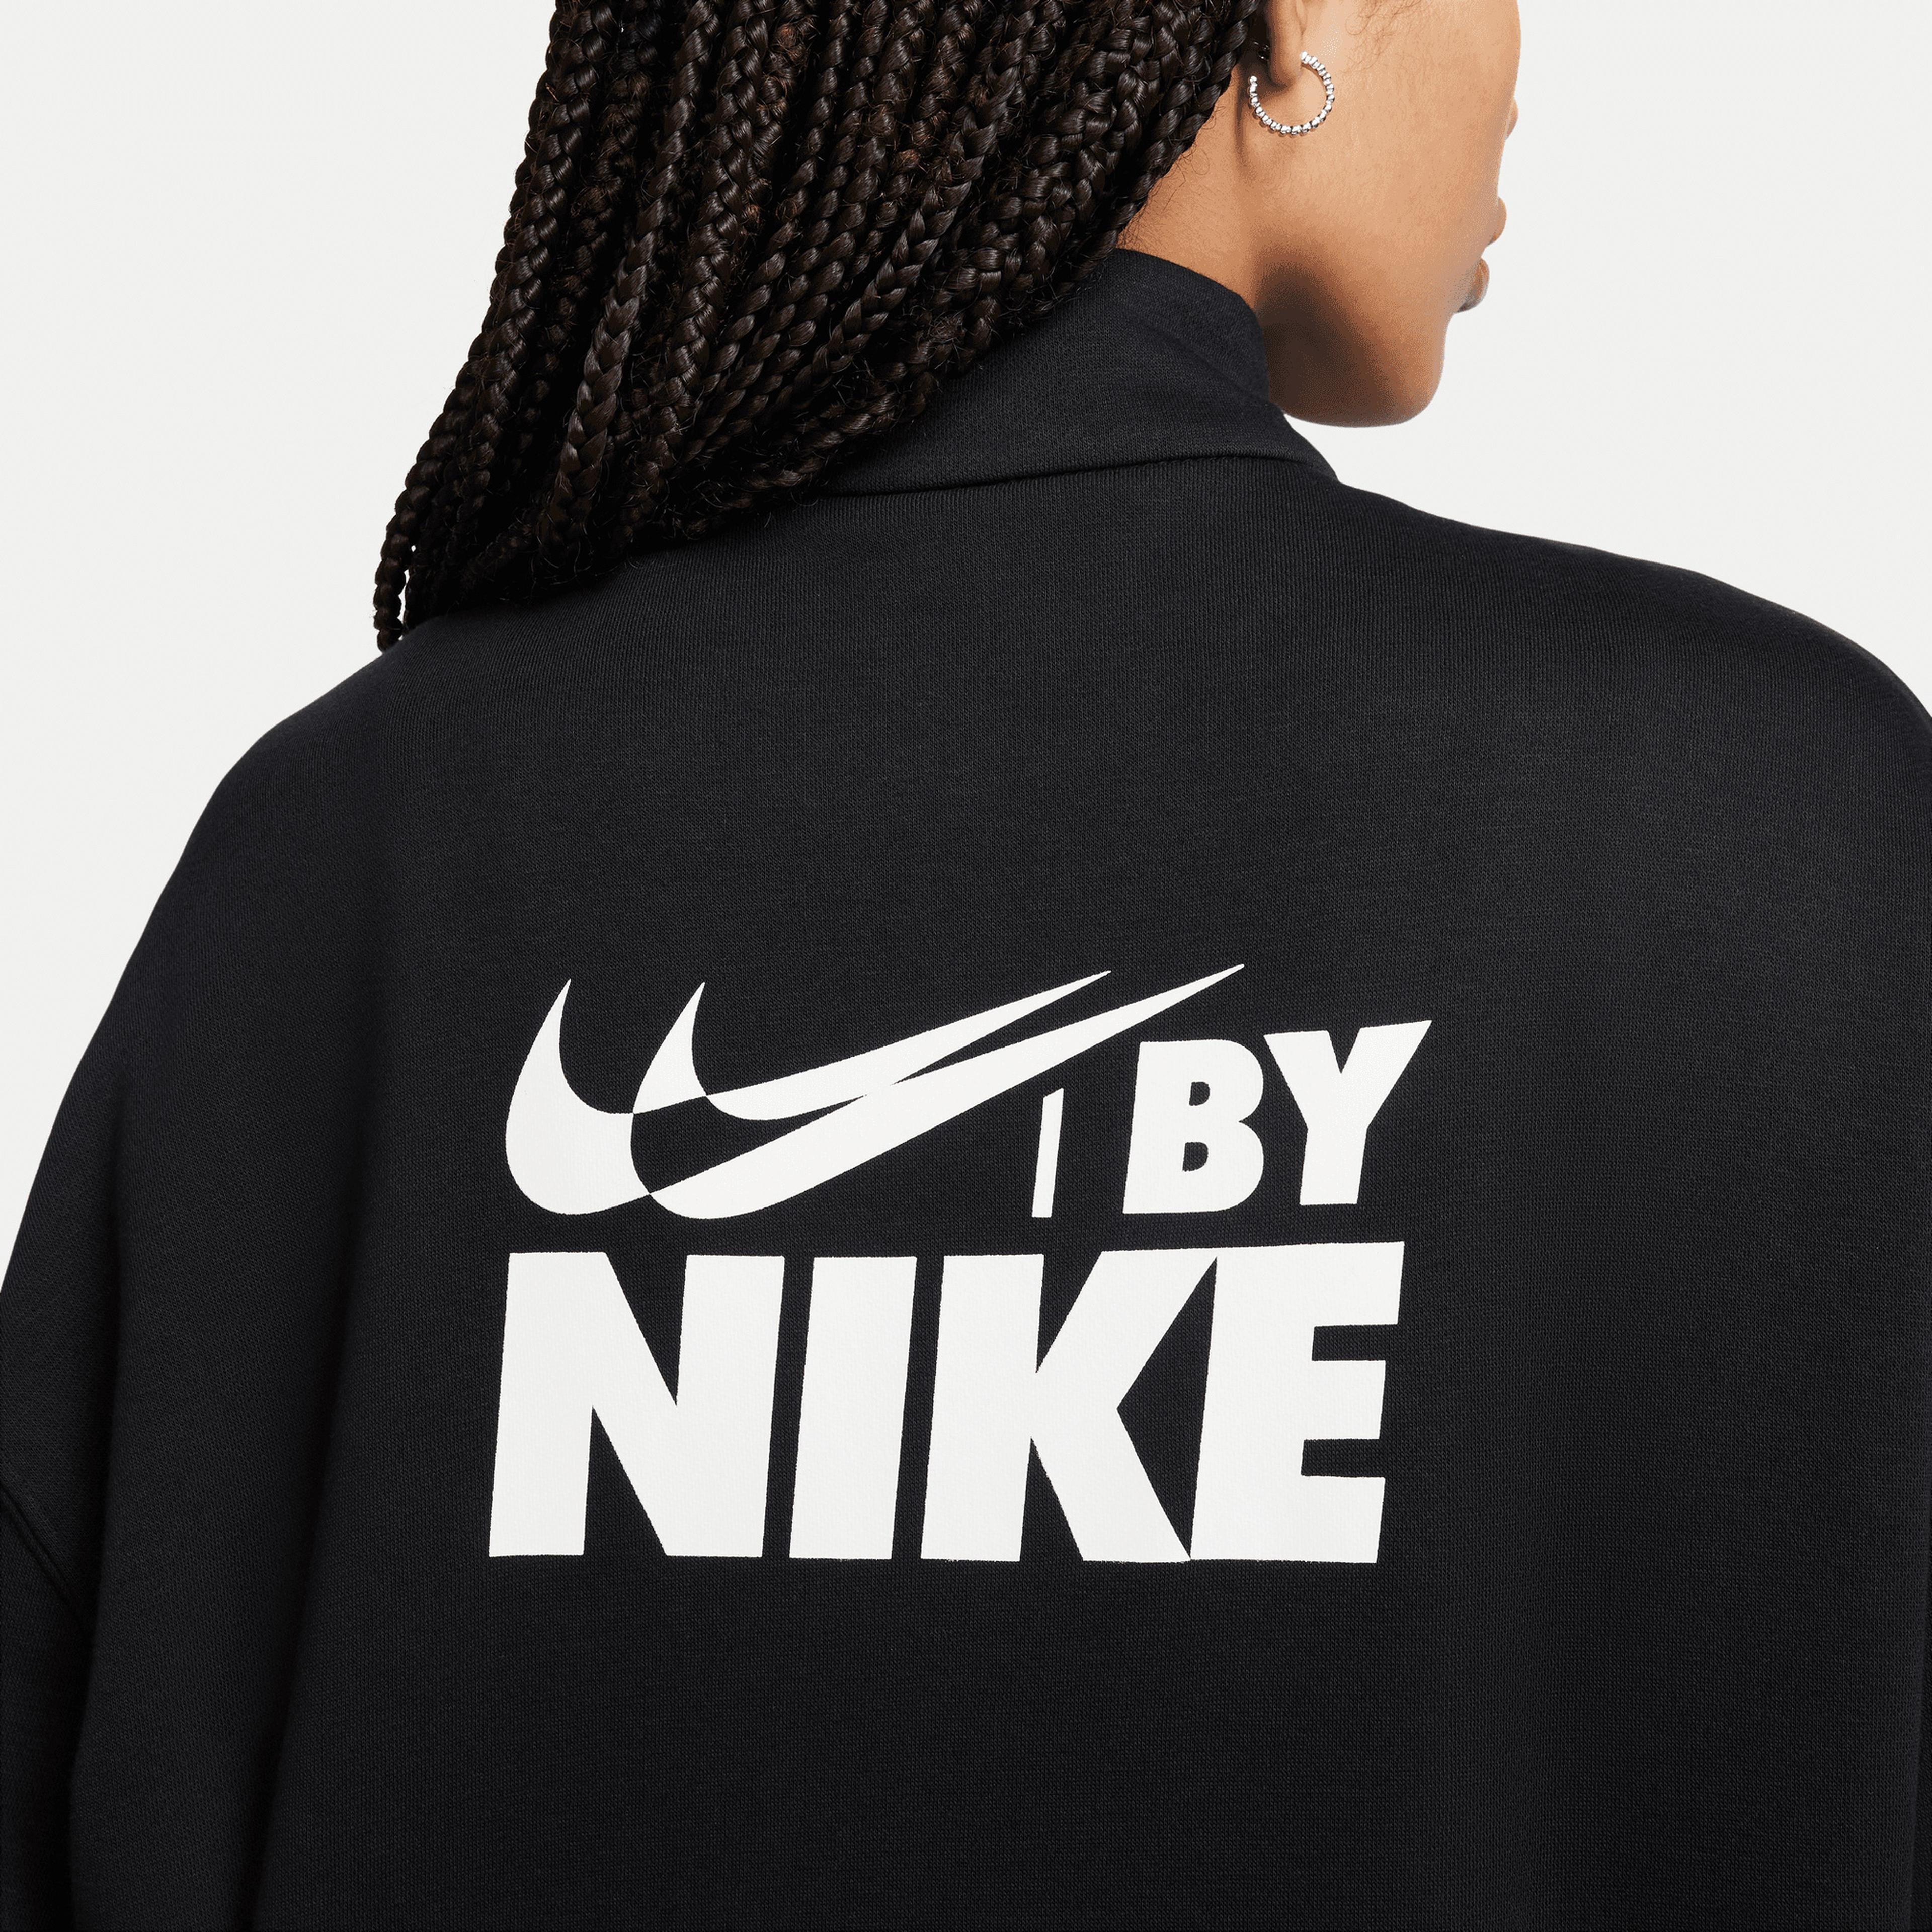 Nike Sportswear Oversized 1/4-Zip Fleece Top Kadın Siyah Sweatshirt